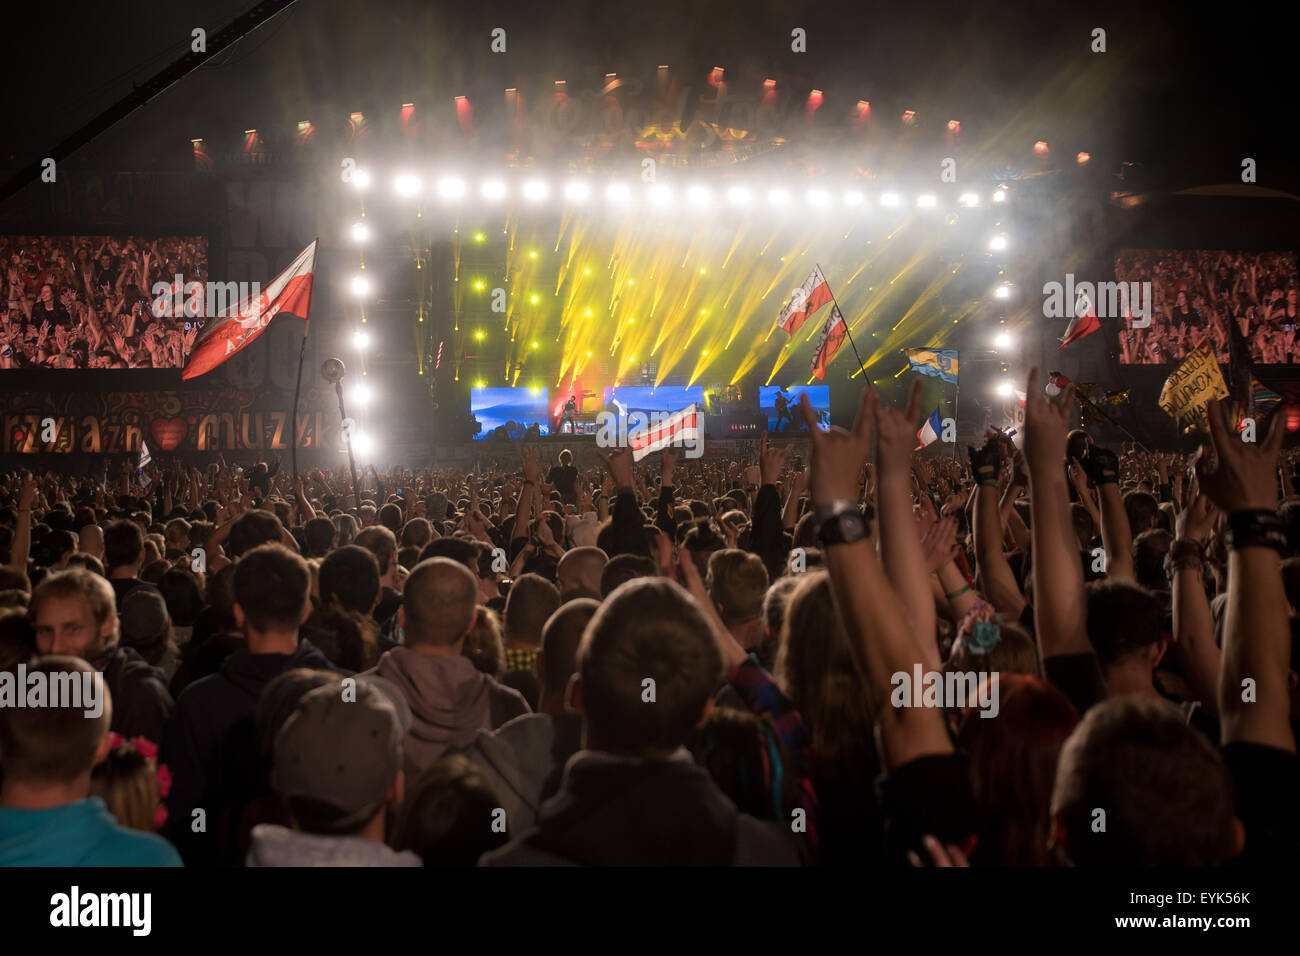 Kostrzyn Nad Odra, Pologne. 30 juillet, 2015. 21 Willa Arte Festival Woodstock - c'est le plus grand festival de musique en Europe. Harmonie Within Temptation : Piotr Crédit/Dziurman Alamy Live News Banque D'Images